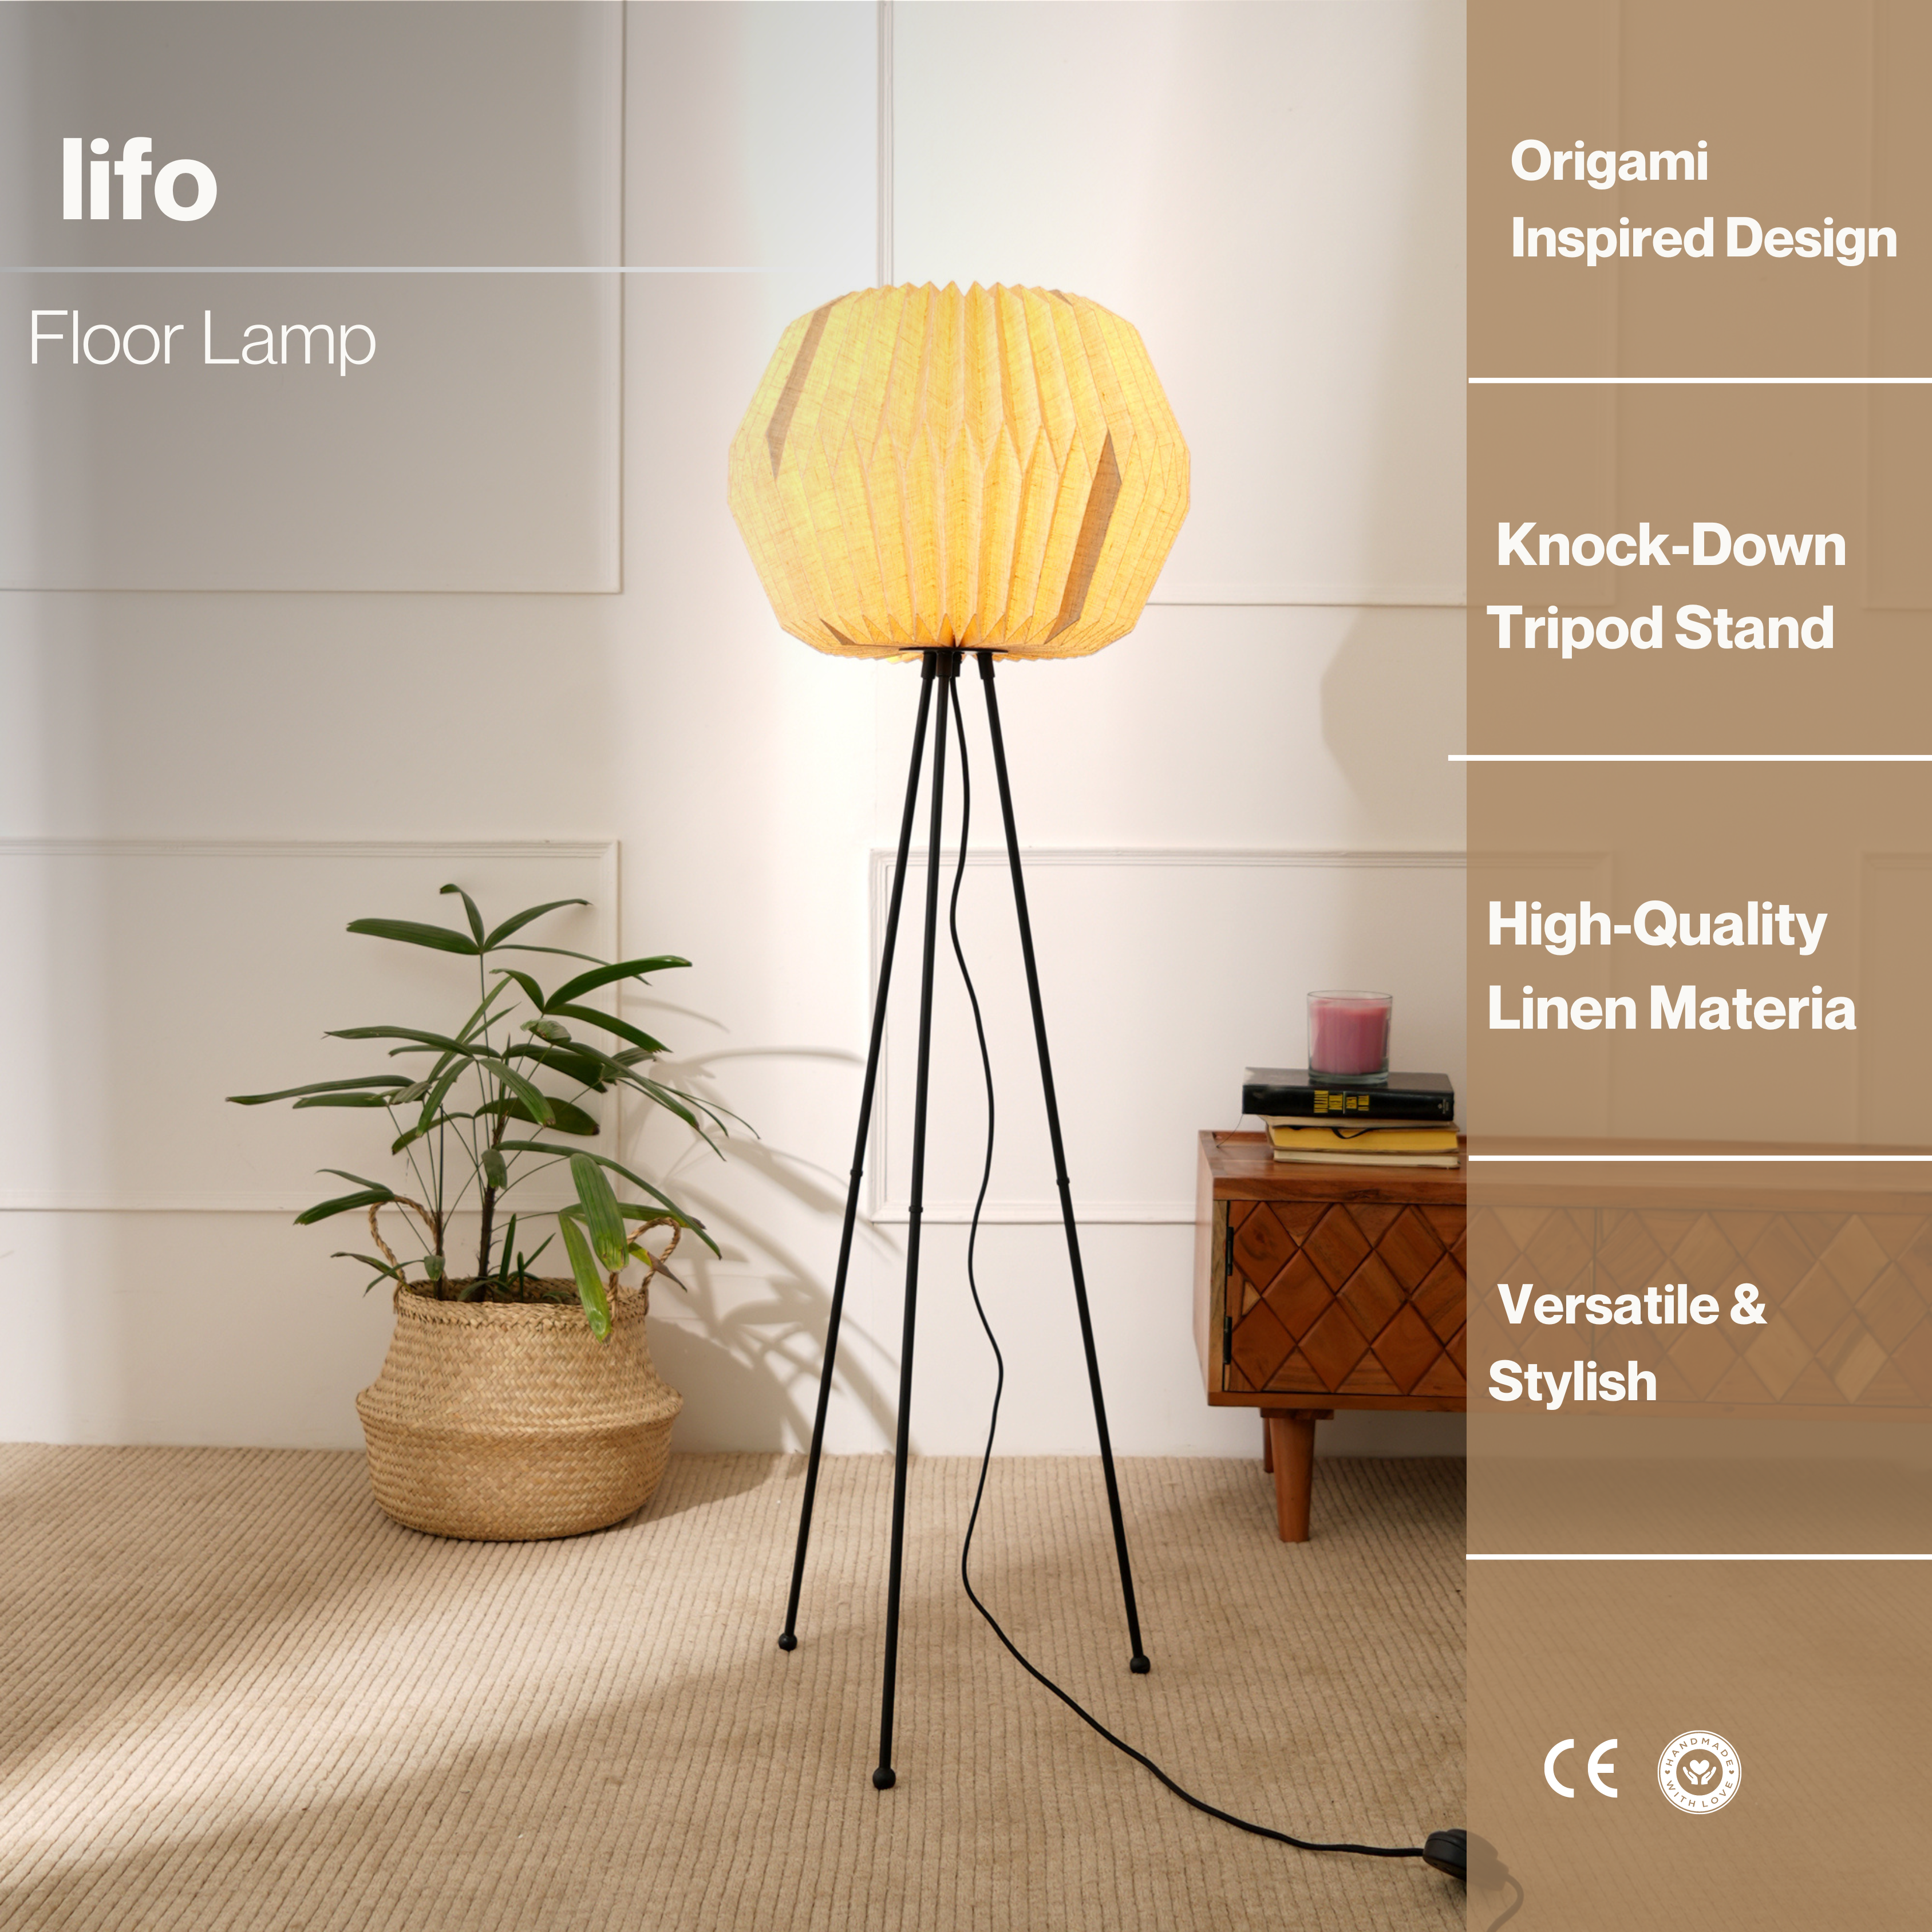 Lifo Floor Lamp - Origami, Linen Floor Lamp, Knock Down Tripod Stand